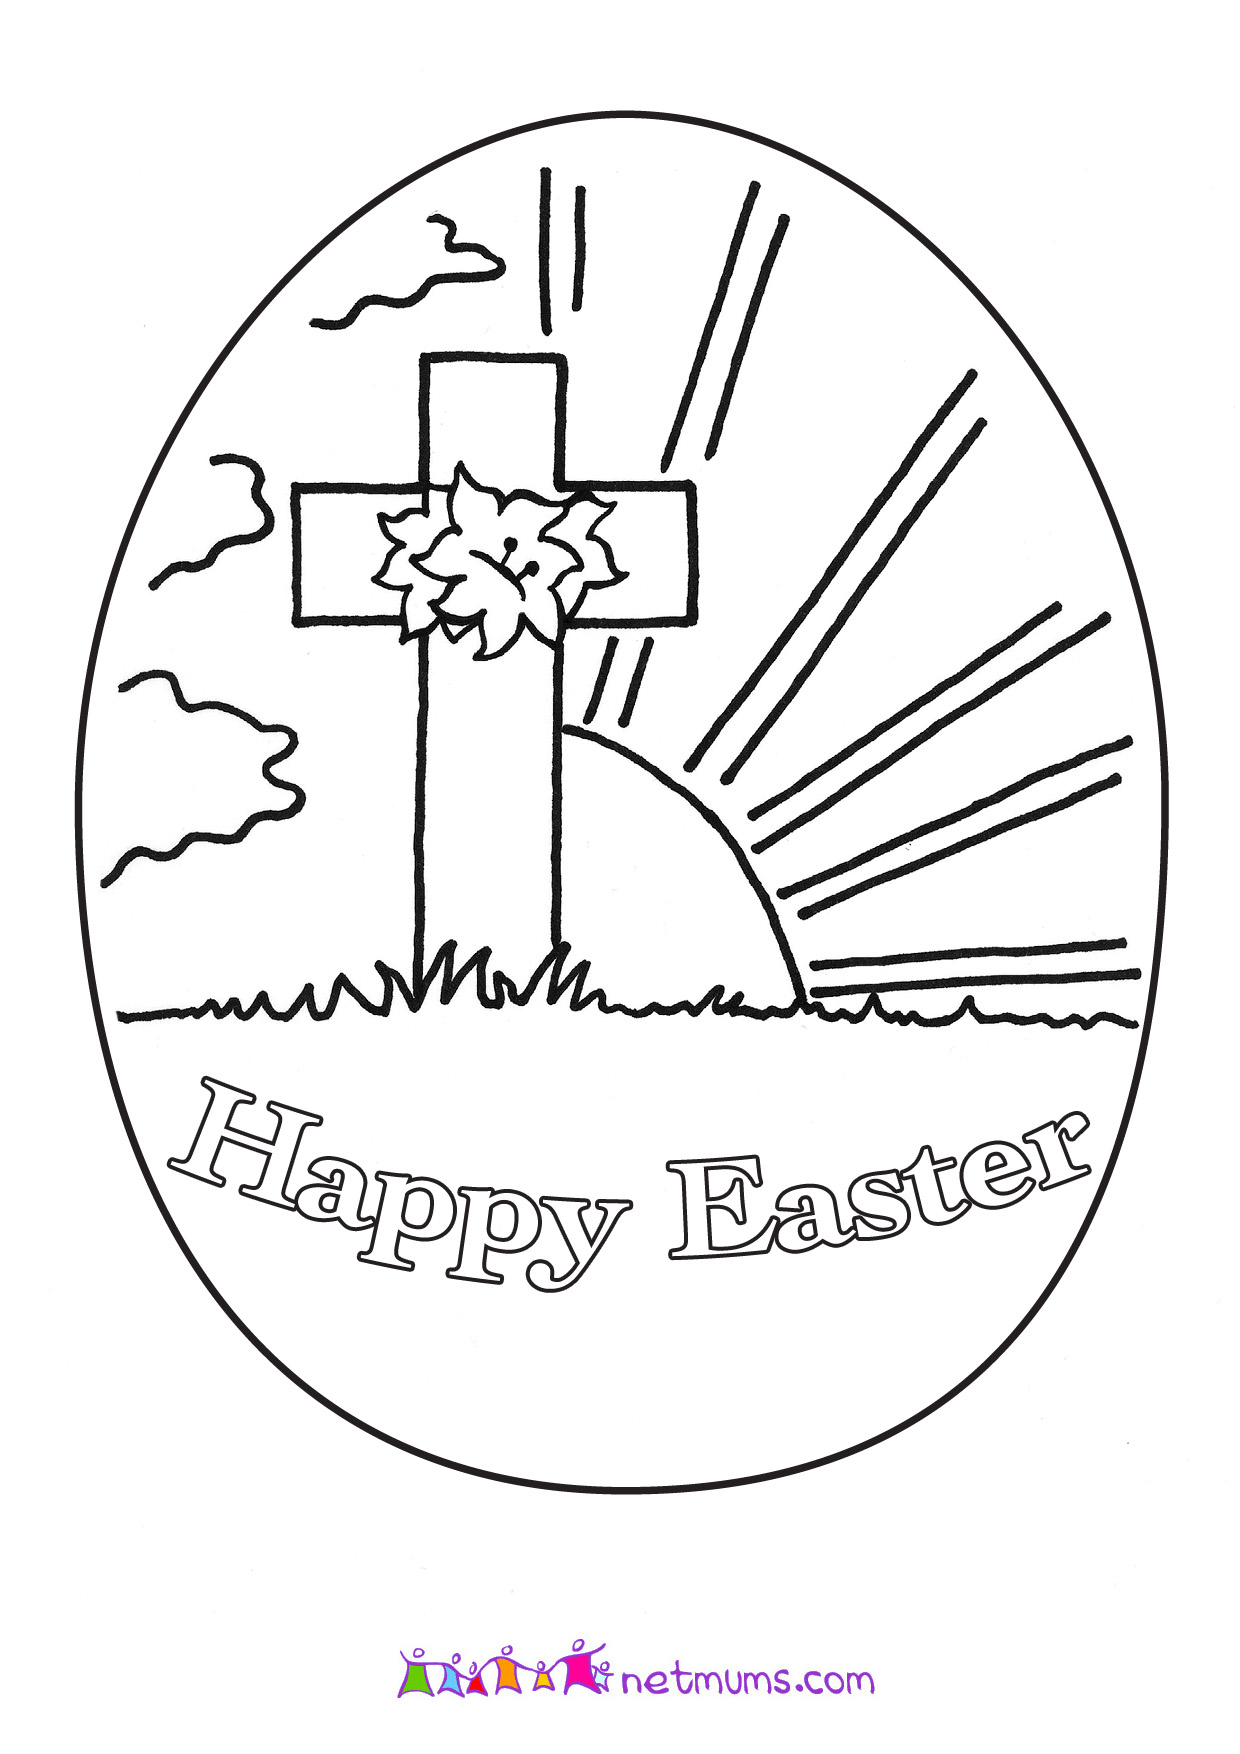 Free Easter Printables Religious Free Printable Templates